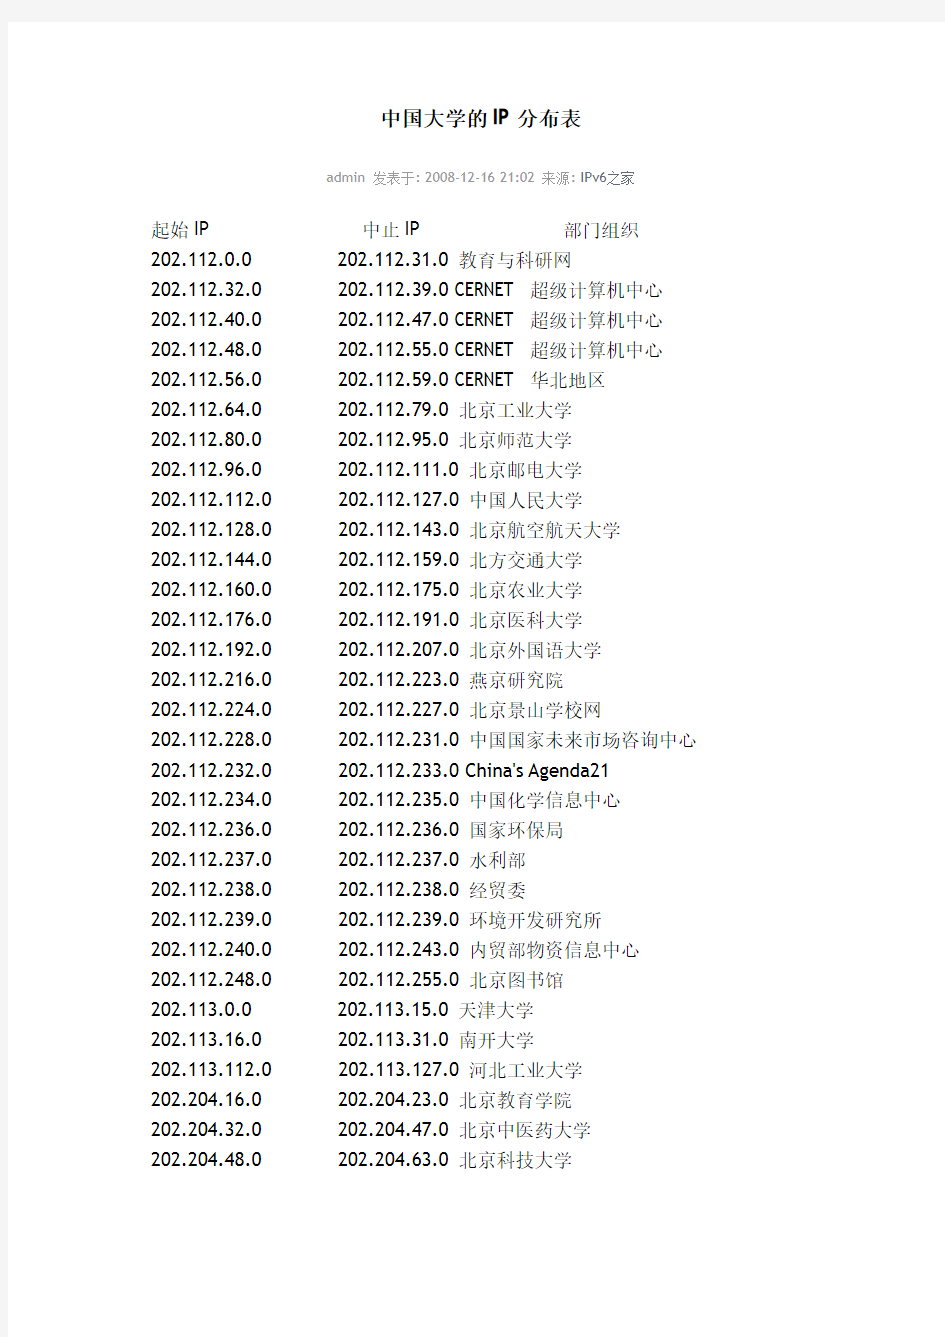 中国大学的IP分布表